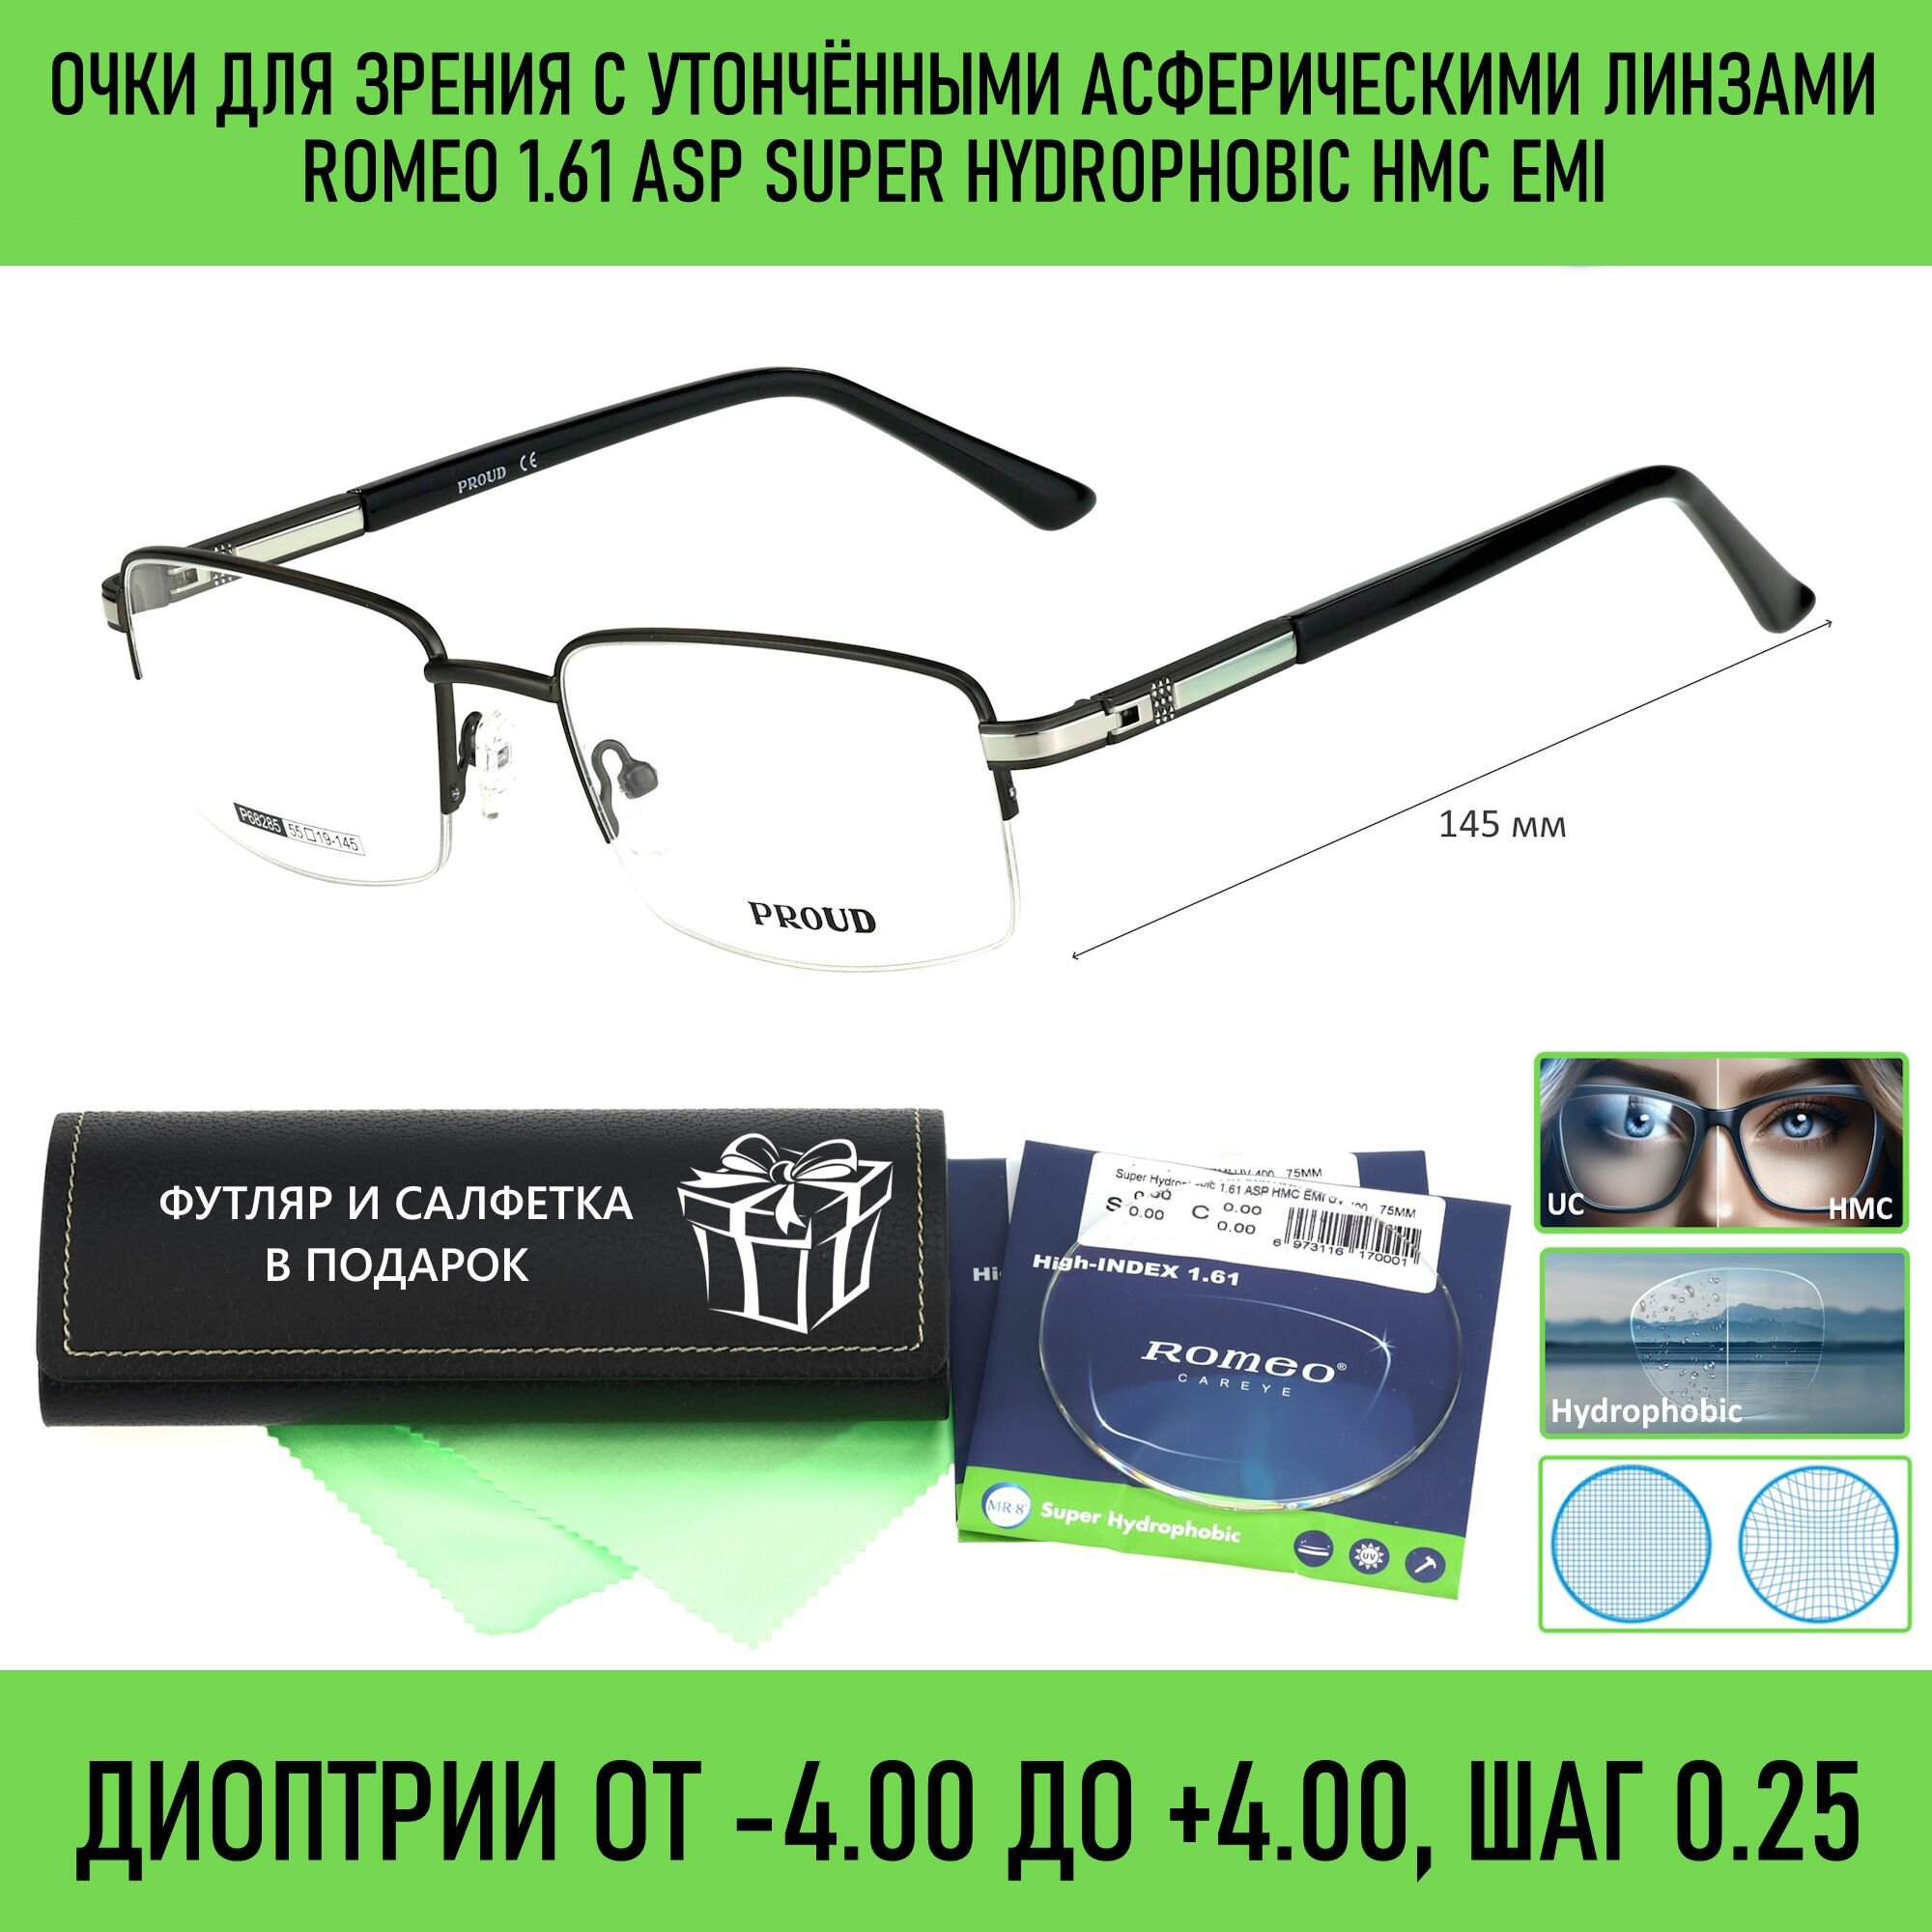 Очки для чтения с футляром на магните PROUD мод. 68285 Цвет 3 с асферическими линзами ROMEO 1.61 ASP Super Hydrophobic HMC/EMI +1.50 РЦ 66-68